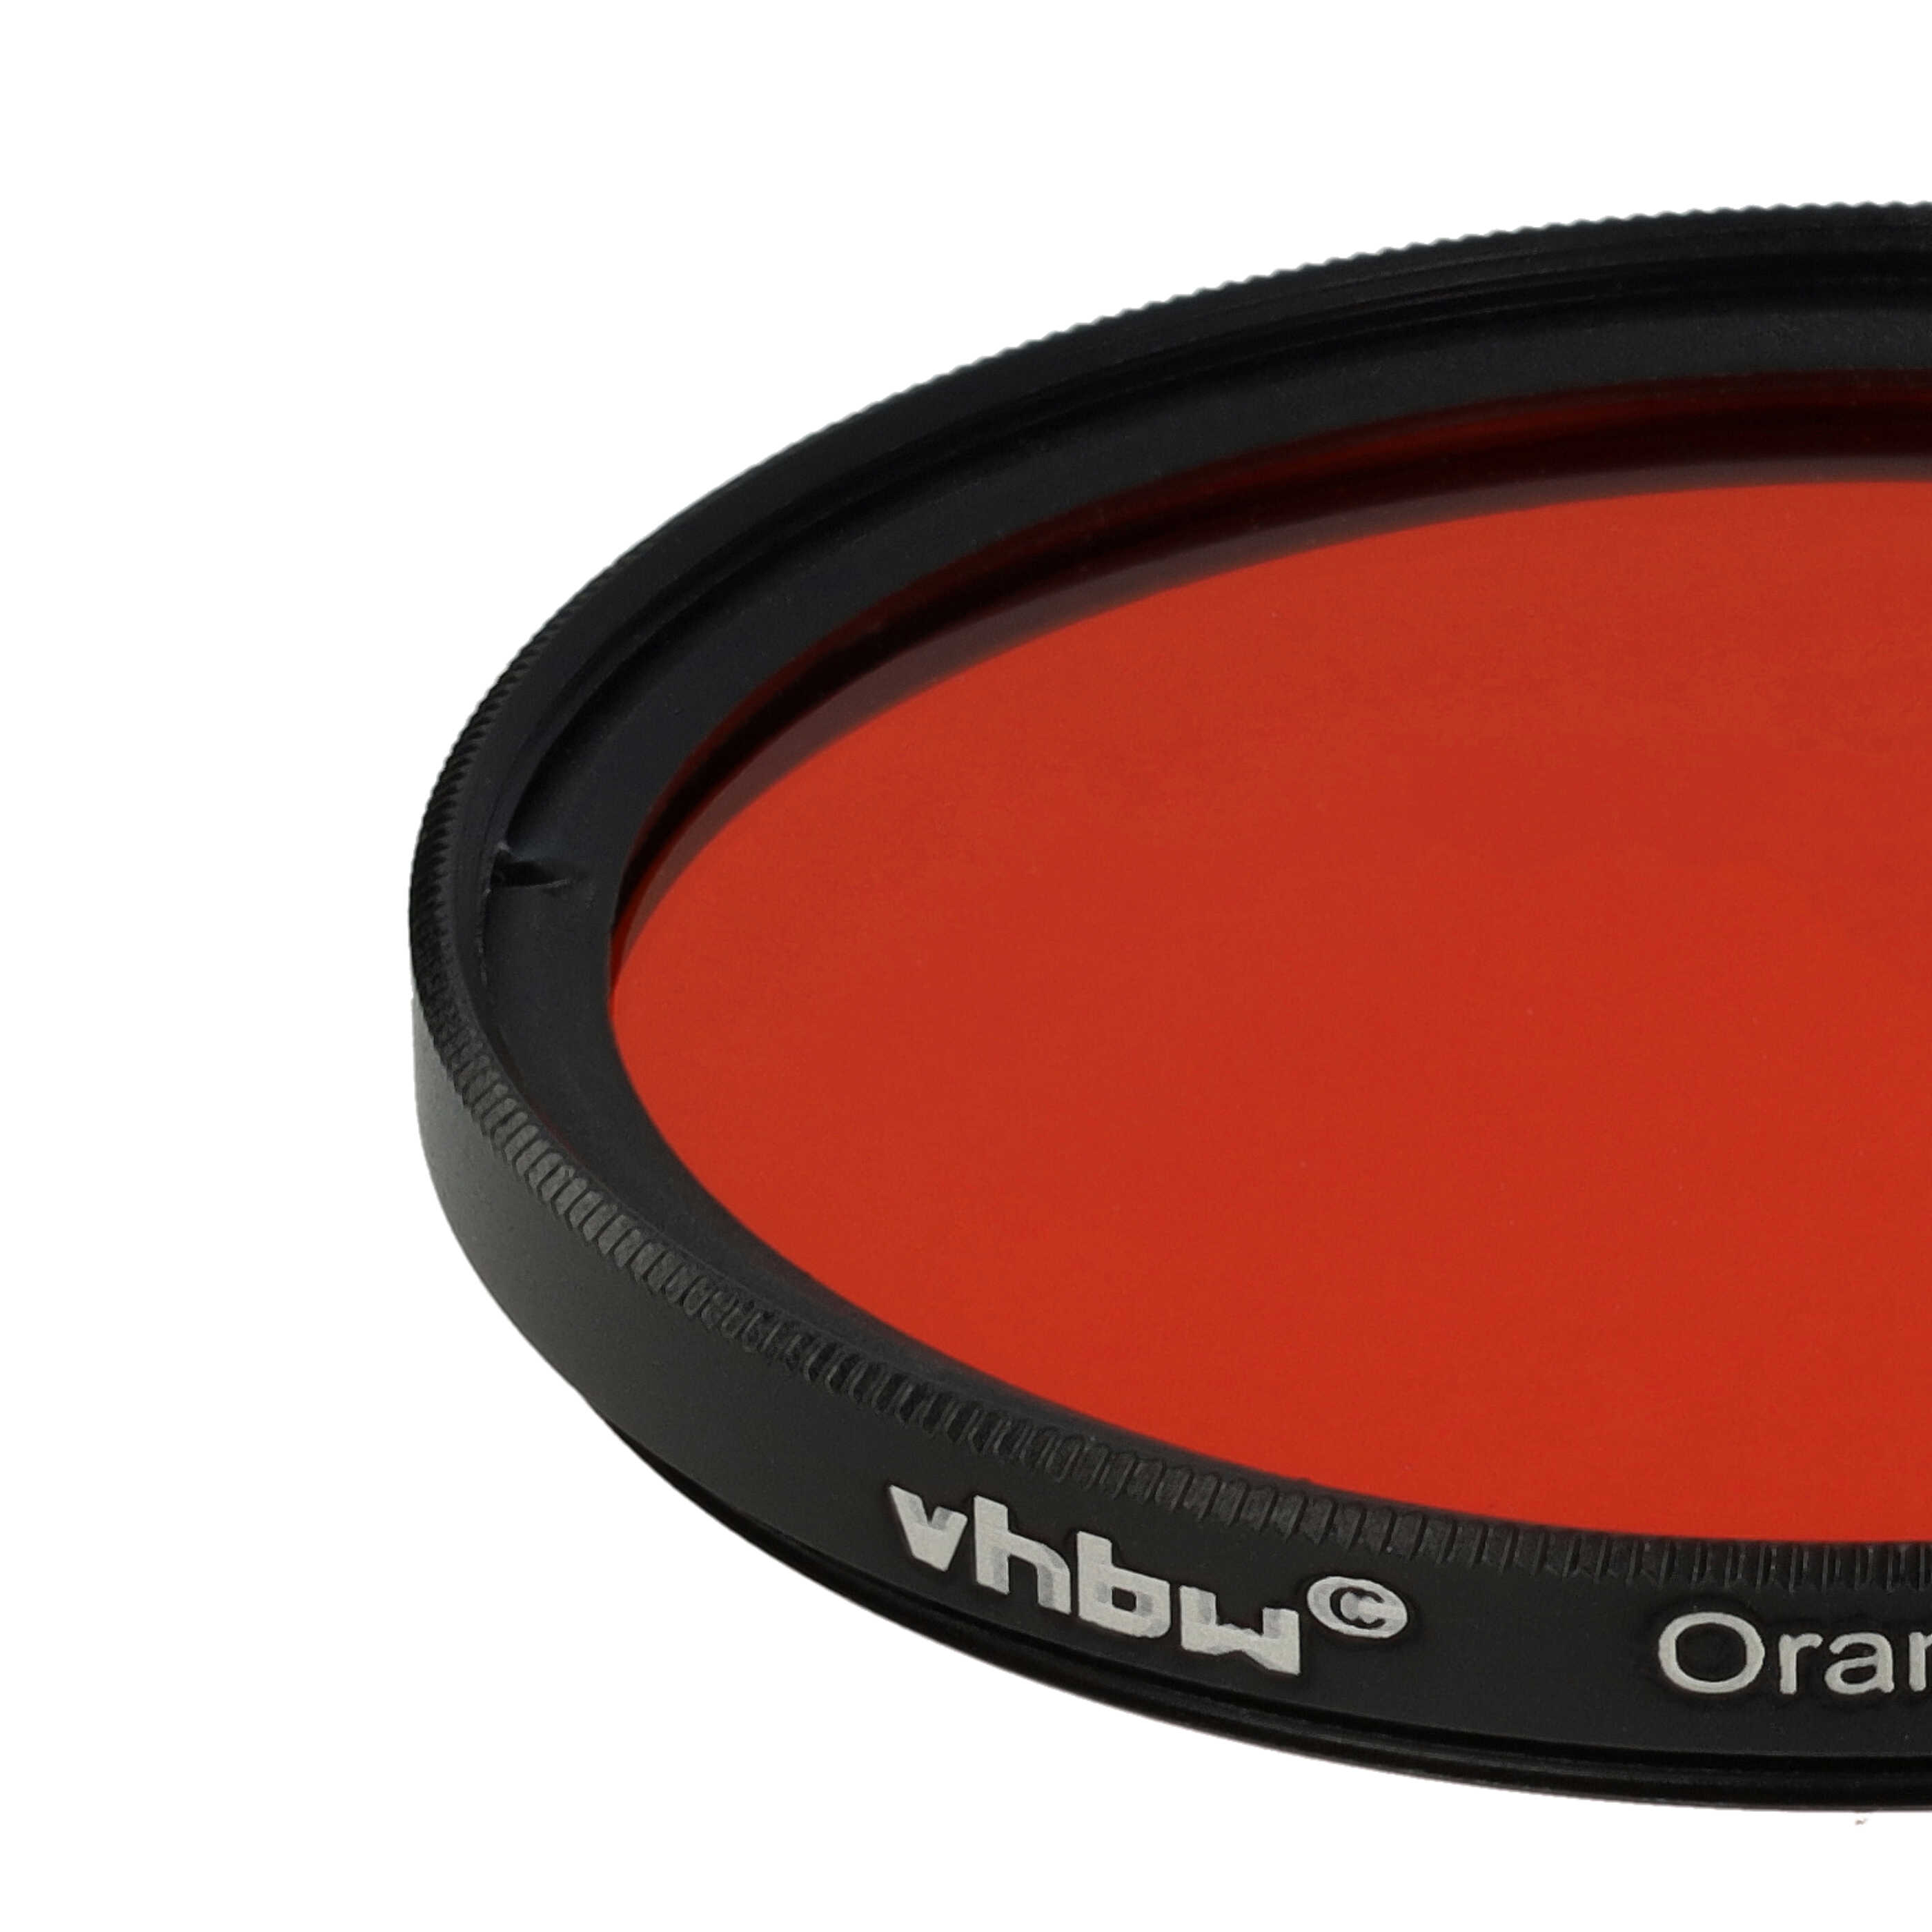 Farbfilter orange passend für Kamera Objektive mit 55 mm Filtergewinde - Orangefilter